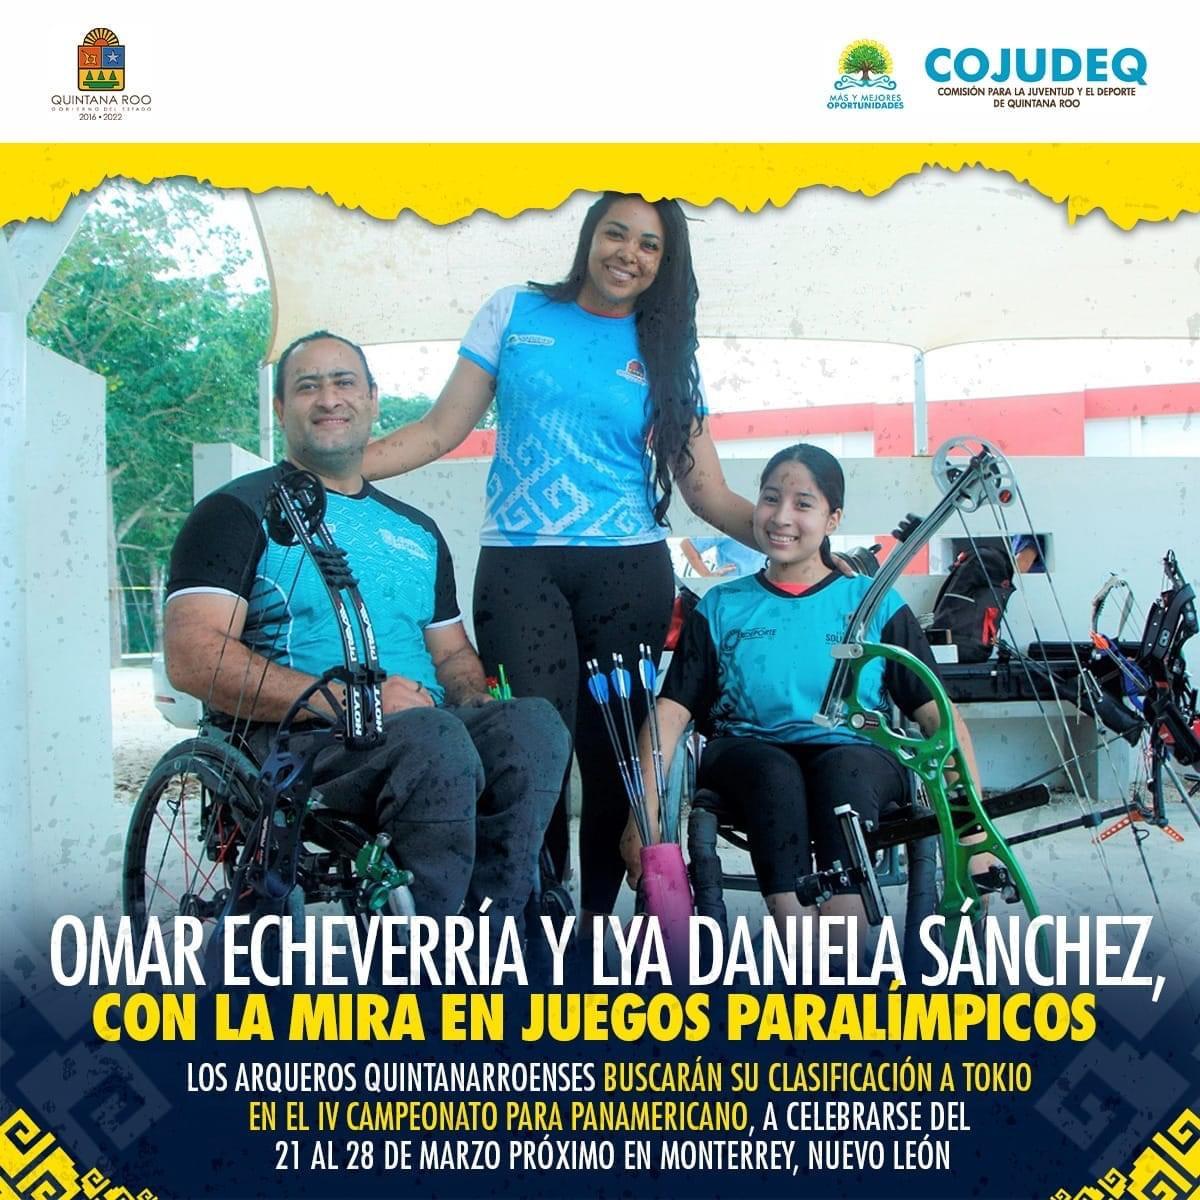 Omar Echeverría y Lya Daniela Sánchez, con la mira en Juegos Paralímpicos